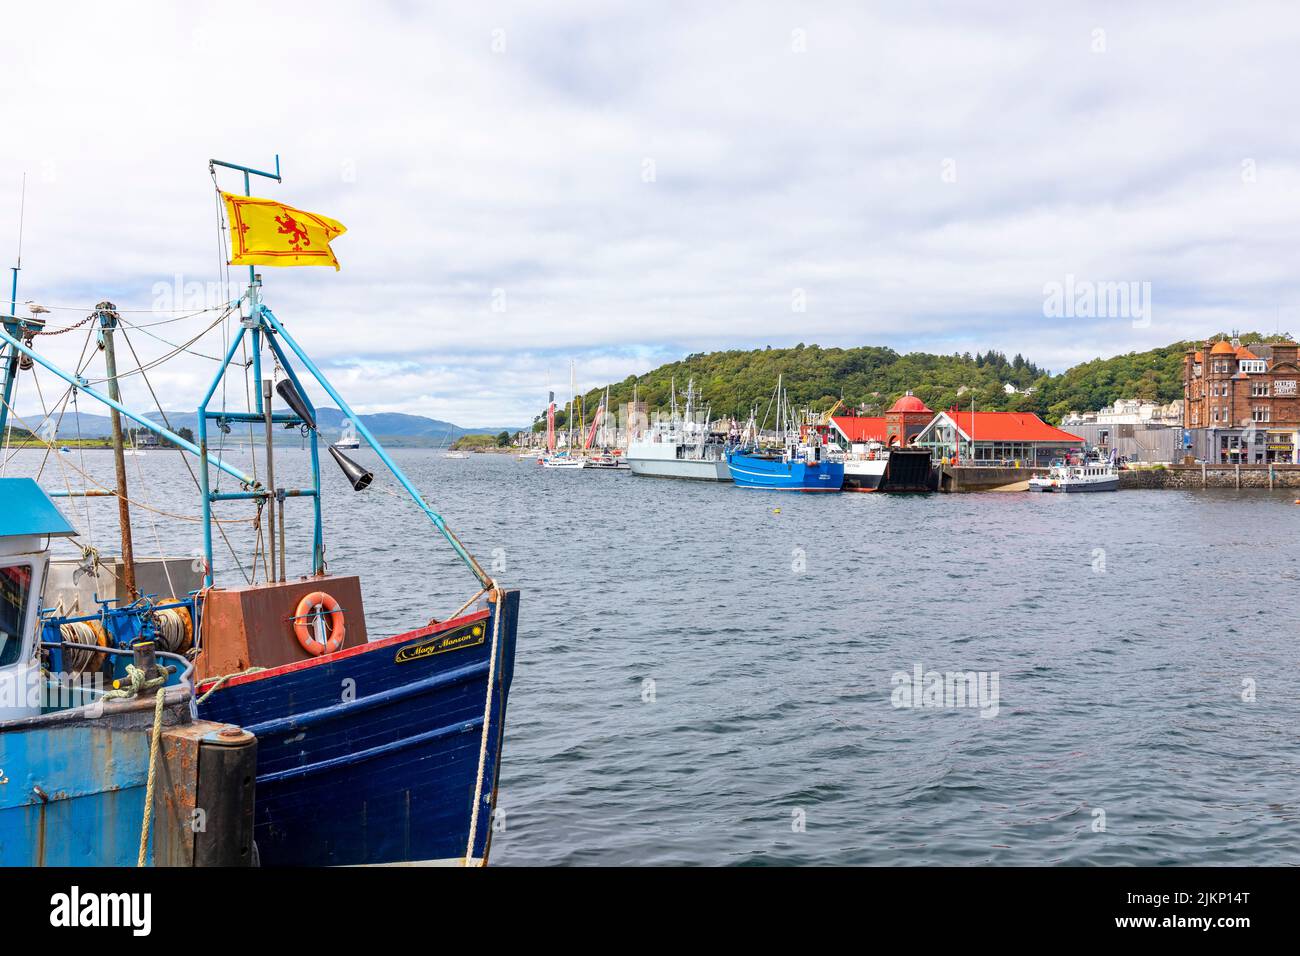 Oban, station balnéaire sur la côte ouest de l'Écosse, port de pêche et bateaux de pêche sur le quai, Oban, Écosse, Royaume-Uni été 2022 Banque D'Images